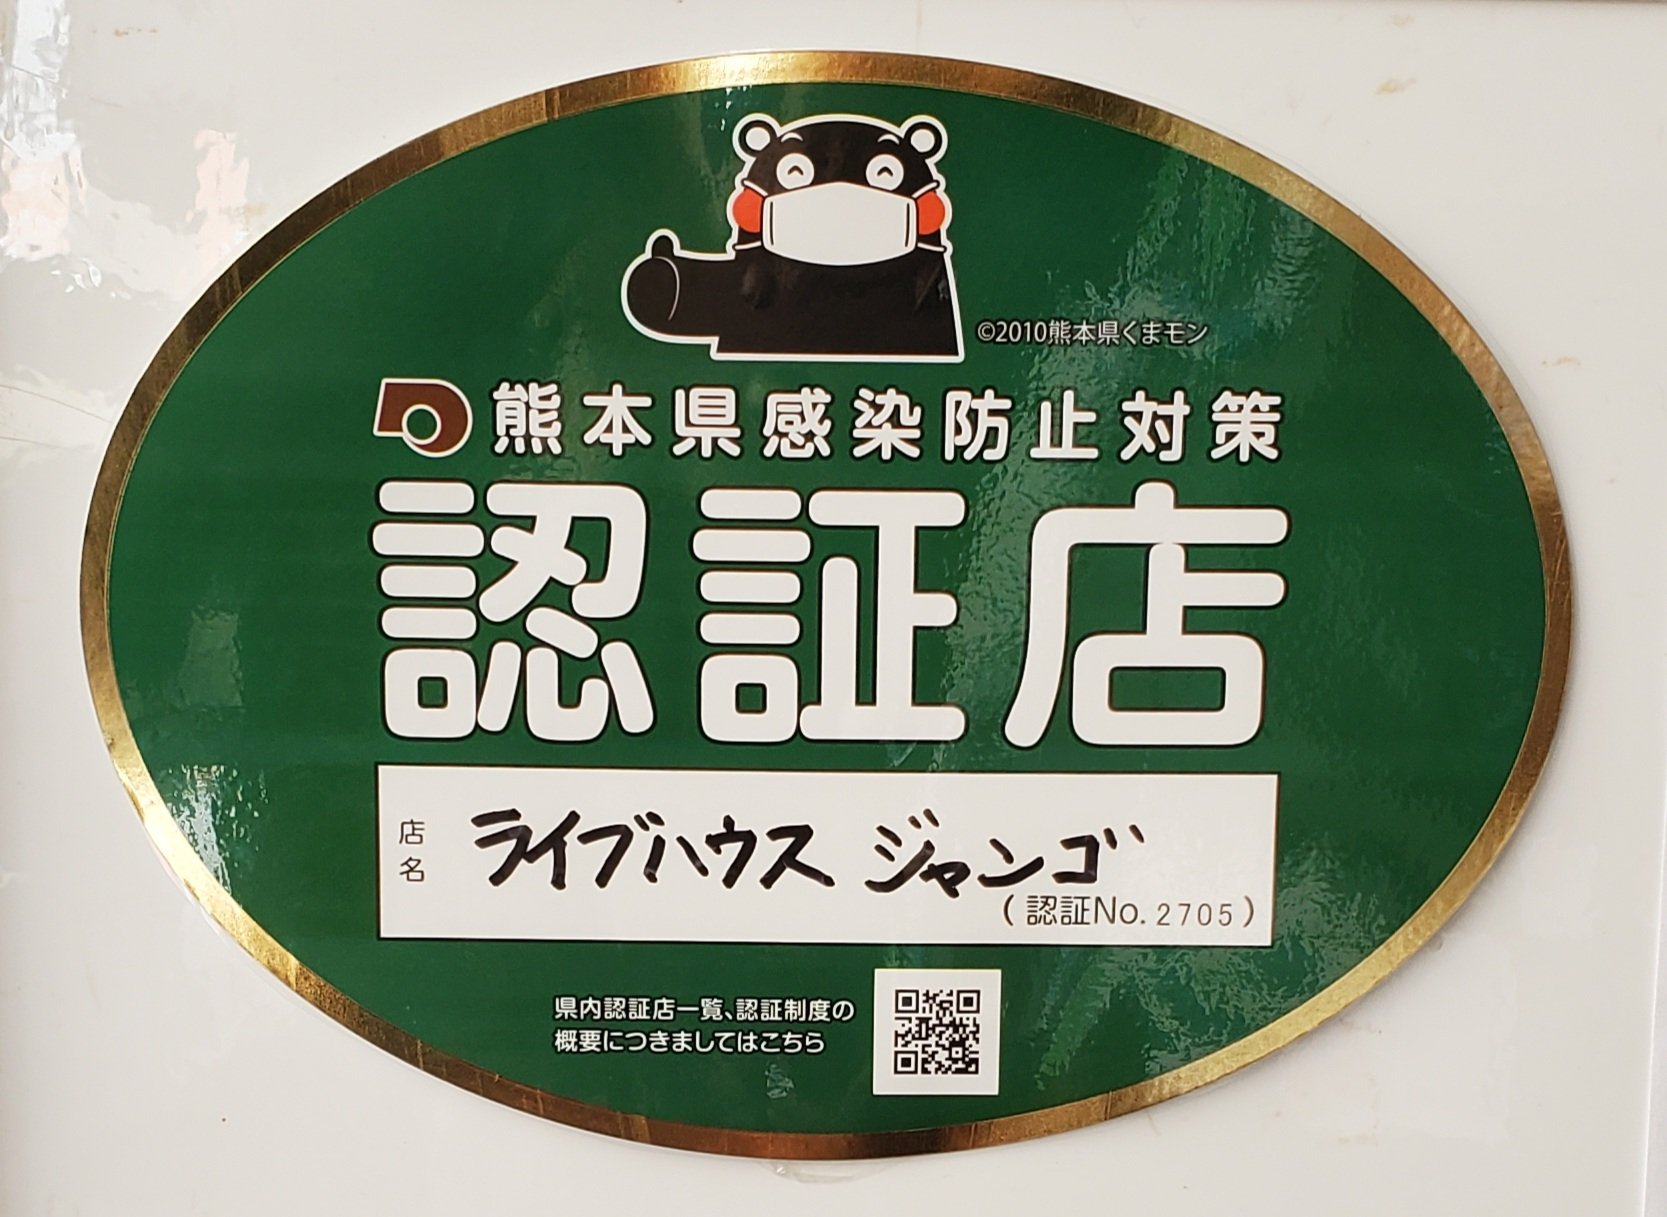 熊本県感染防止対策認証店に登録されました。